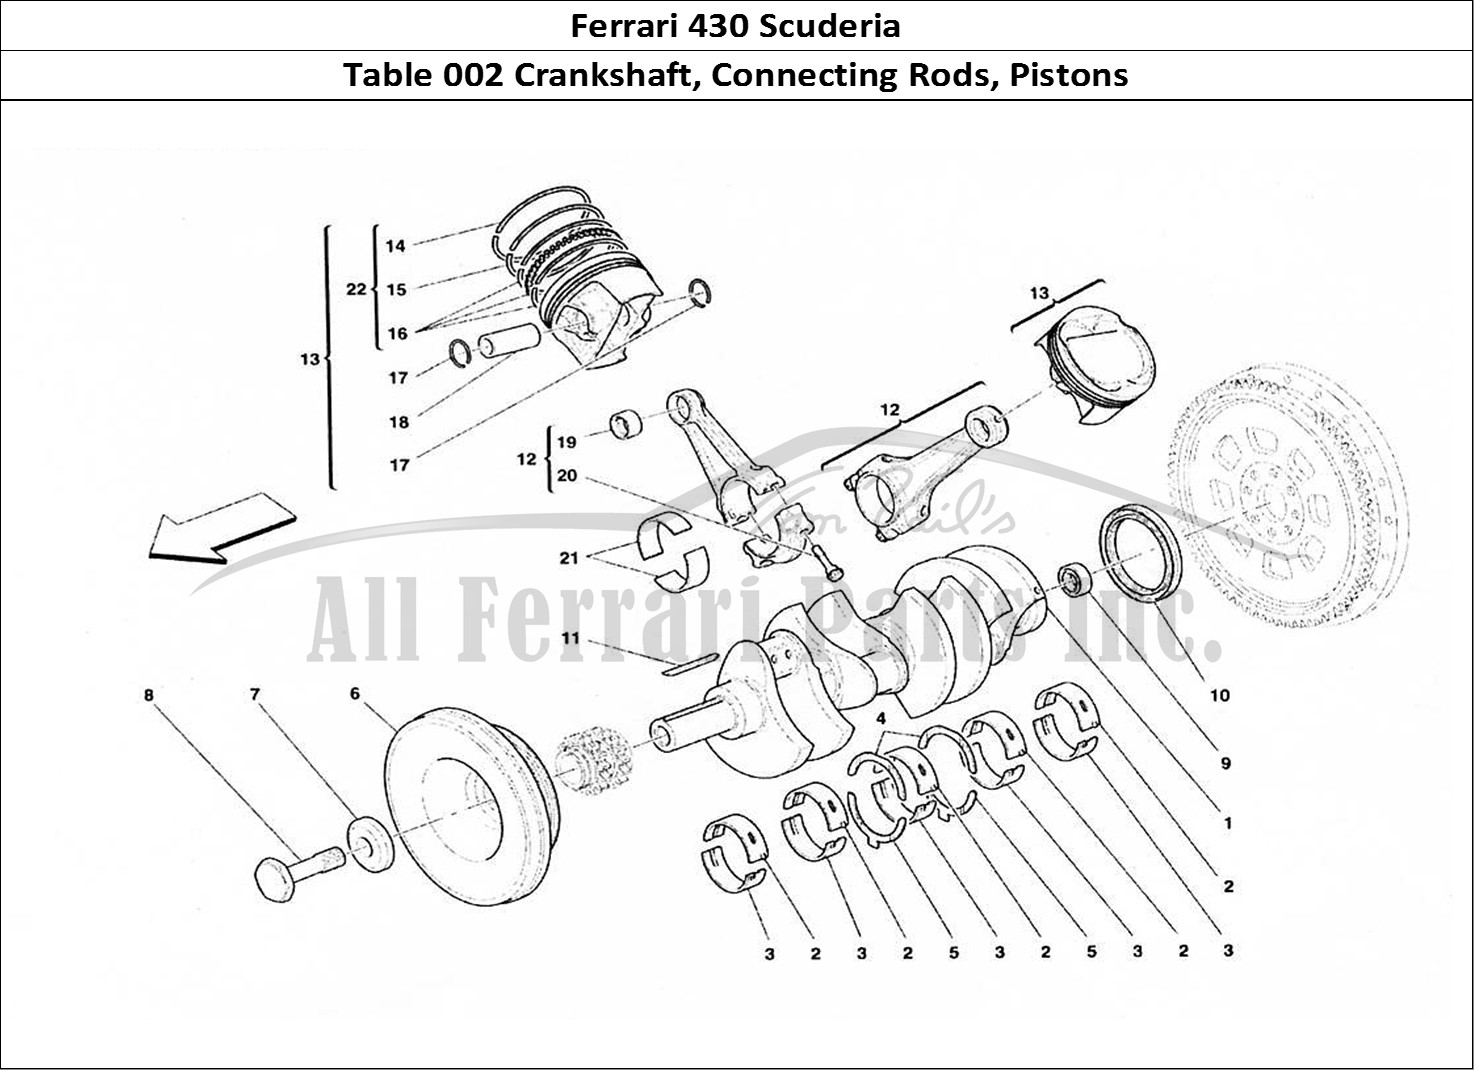 Ferrari Parts Ferrari 430 Scuderia Page 002 Crankshaft, Conrods And P